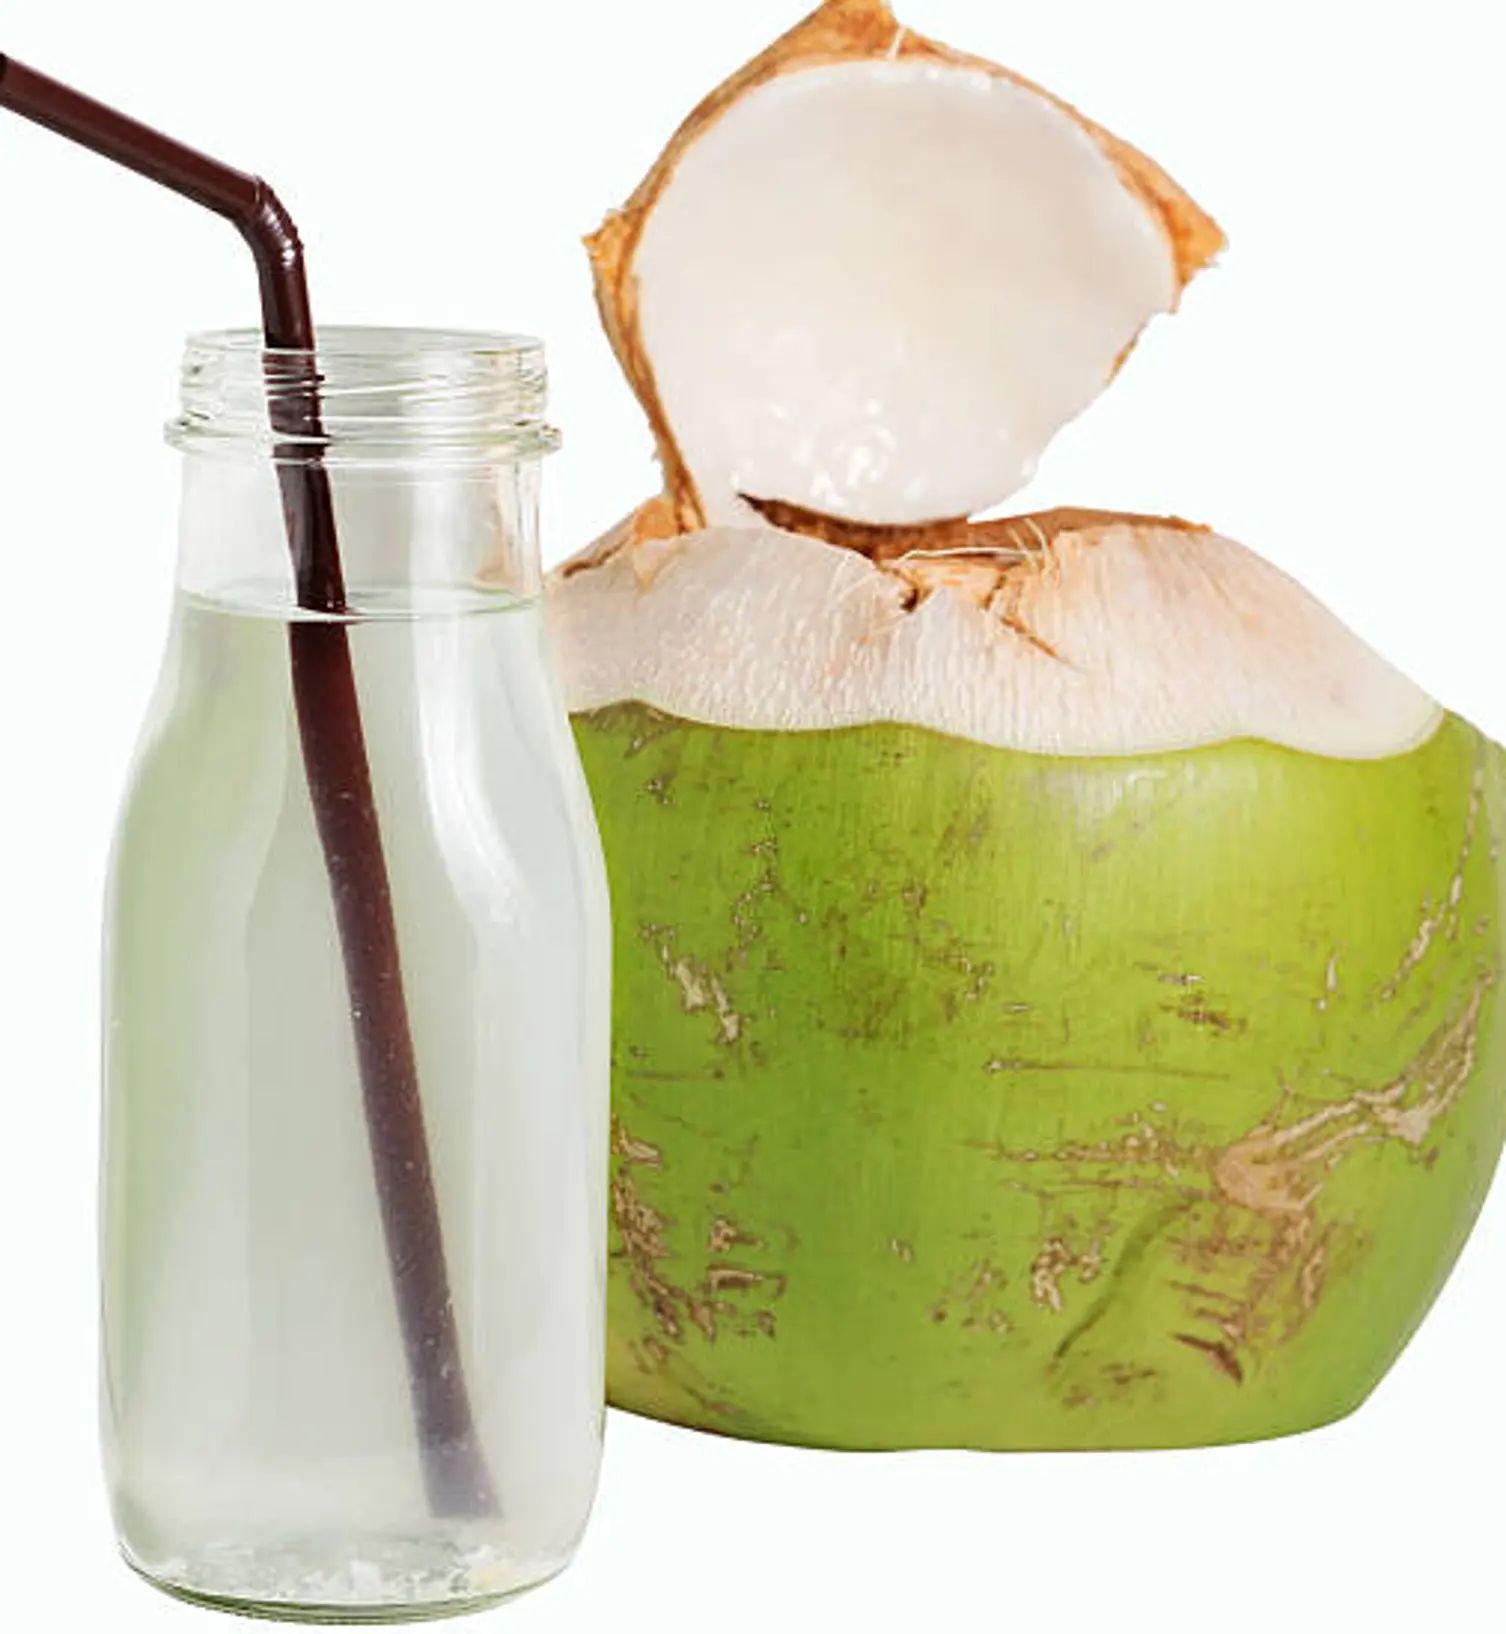 Água de coco de origem de qualidade pura para beber embalagem garrafas cliente pedido da índia